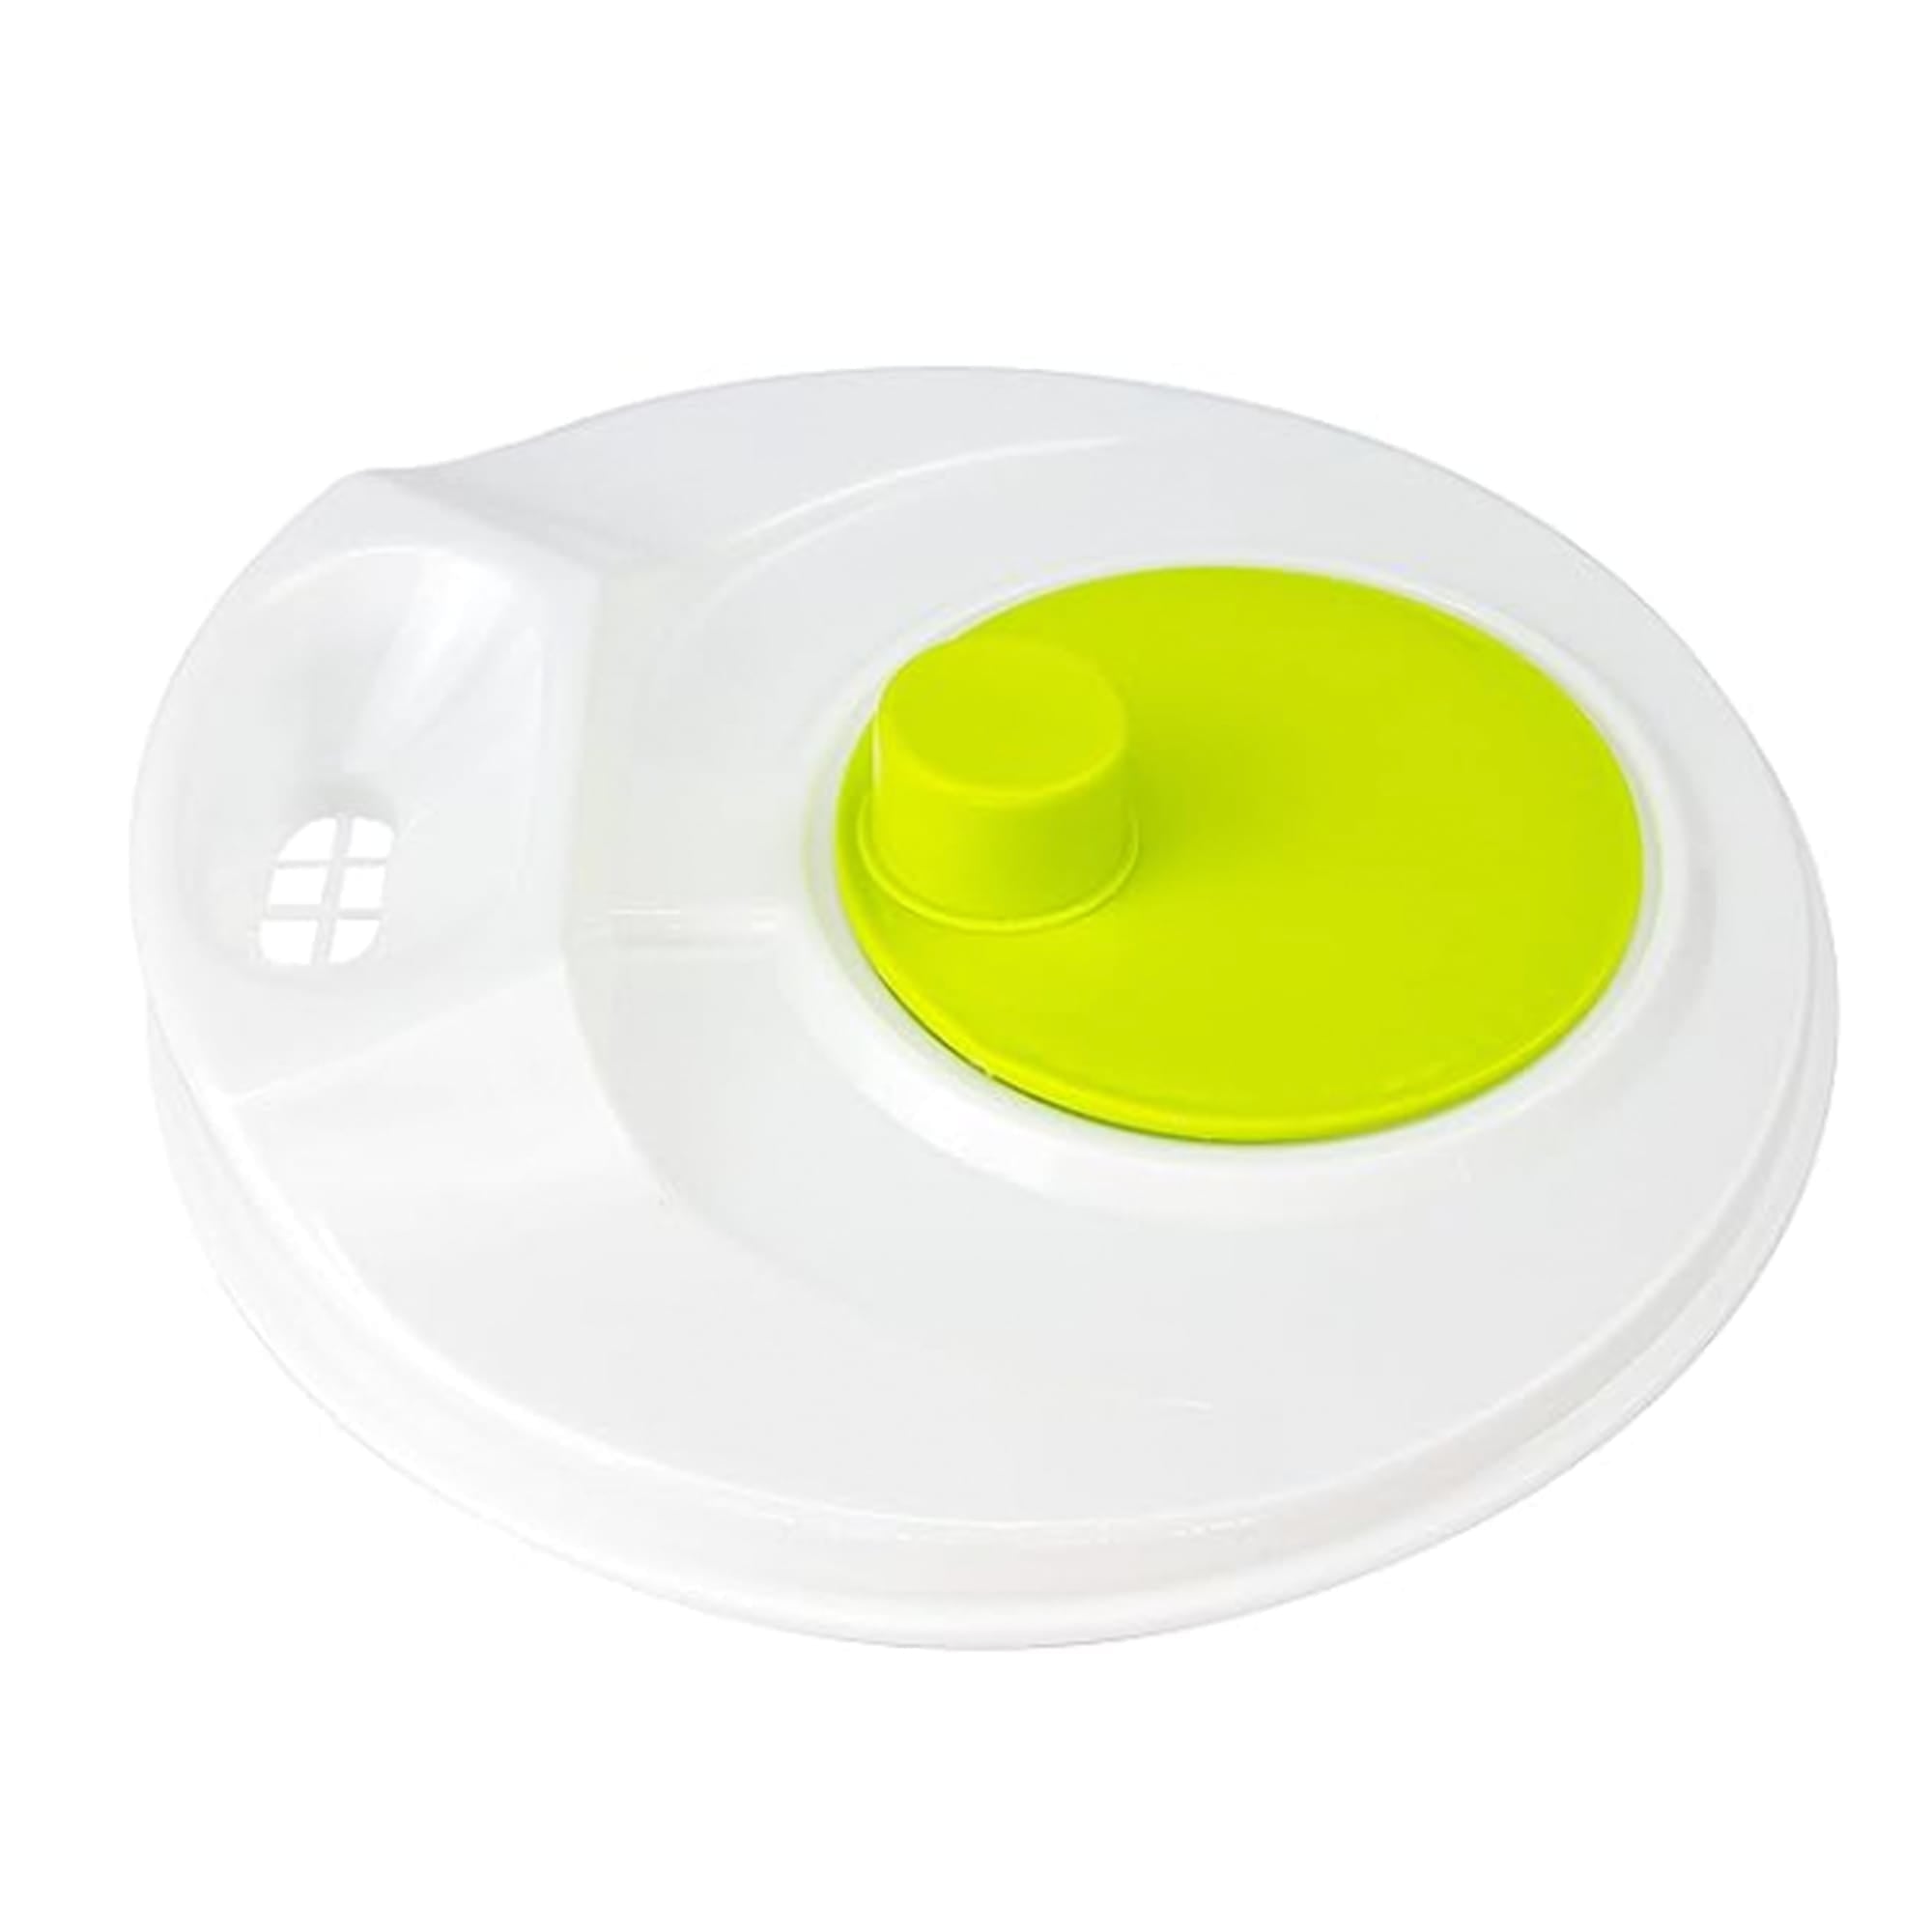 Home Basics Plastic Salad Spinner, White $5.00 EACH, CASE PACK OF 12